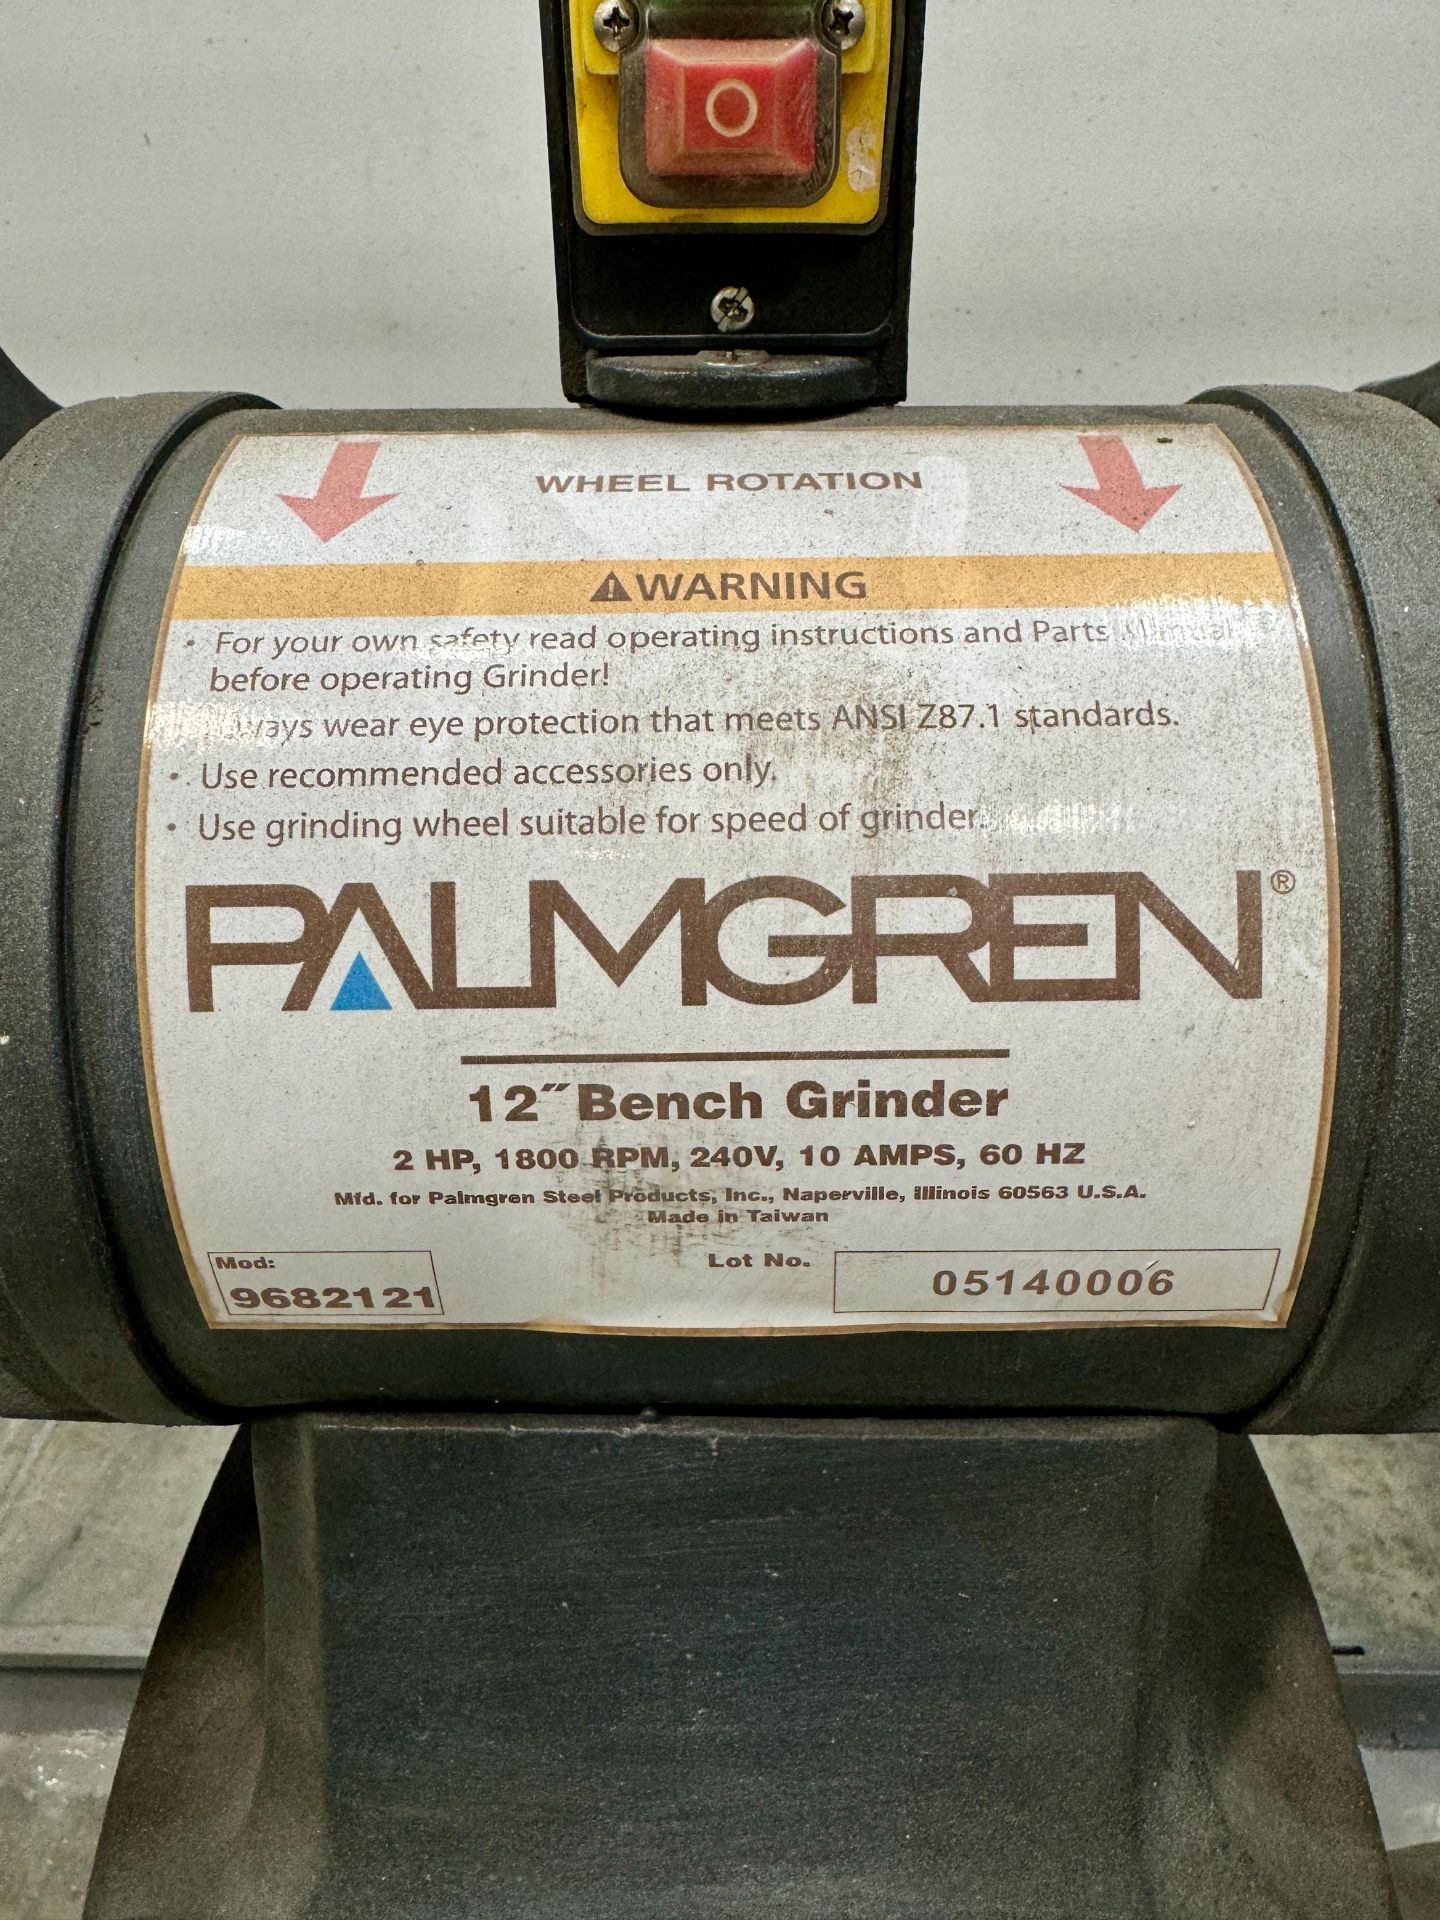 PALMGREN 12" PEDESTAL BENCH GRINDER/BUFFER, MODEL 9682121, 2 HP, 1800 RPM, S/N 05140006 - Image 2 of 2